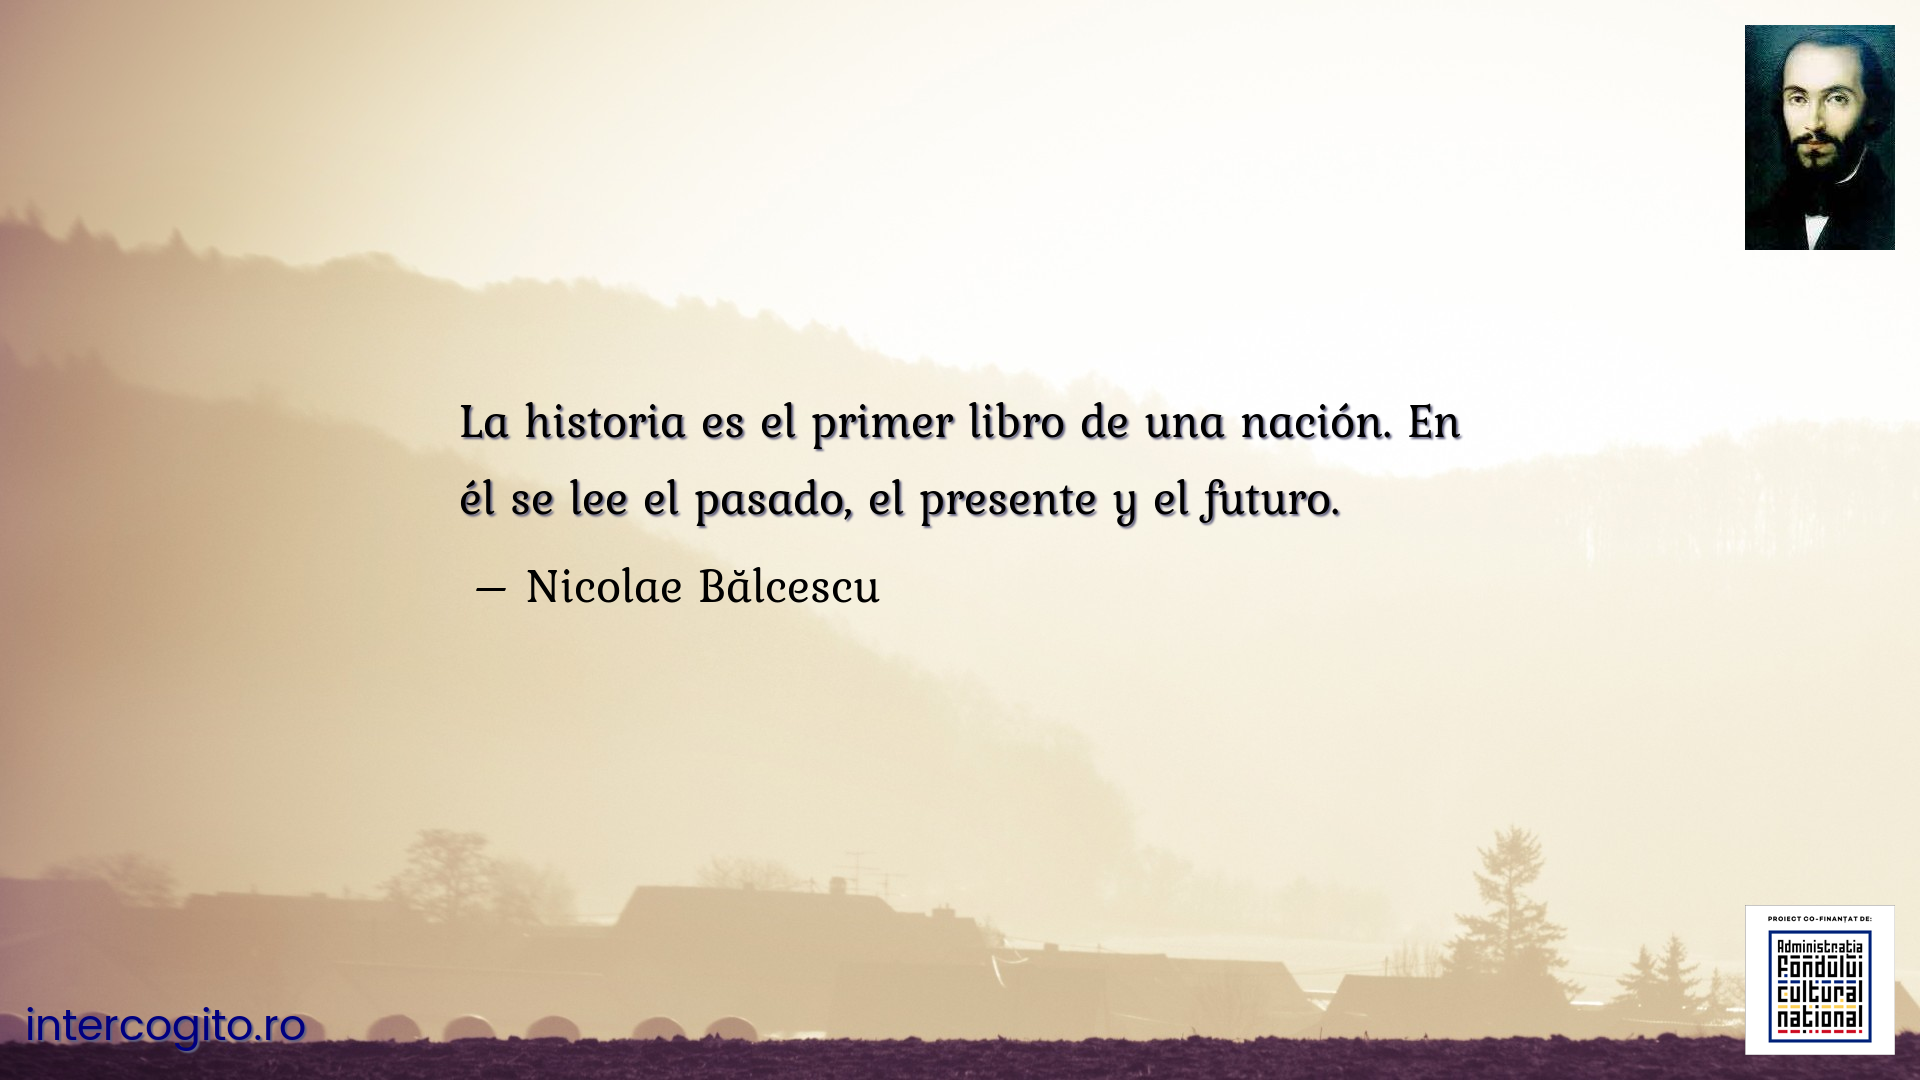 La historia es el primer libro de una nación. En él se lee el pasado, el presente y el futuro.